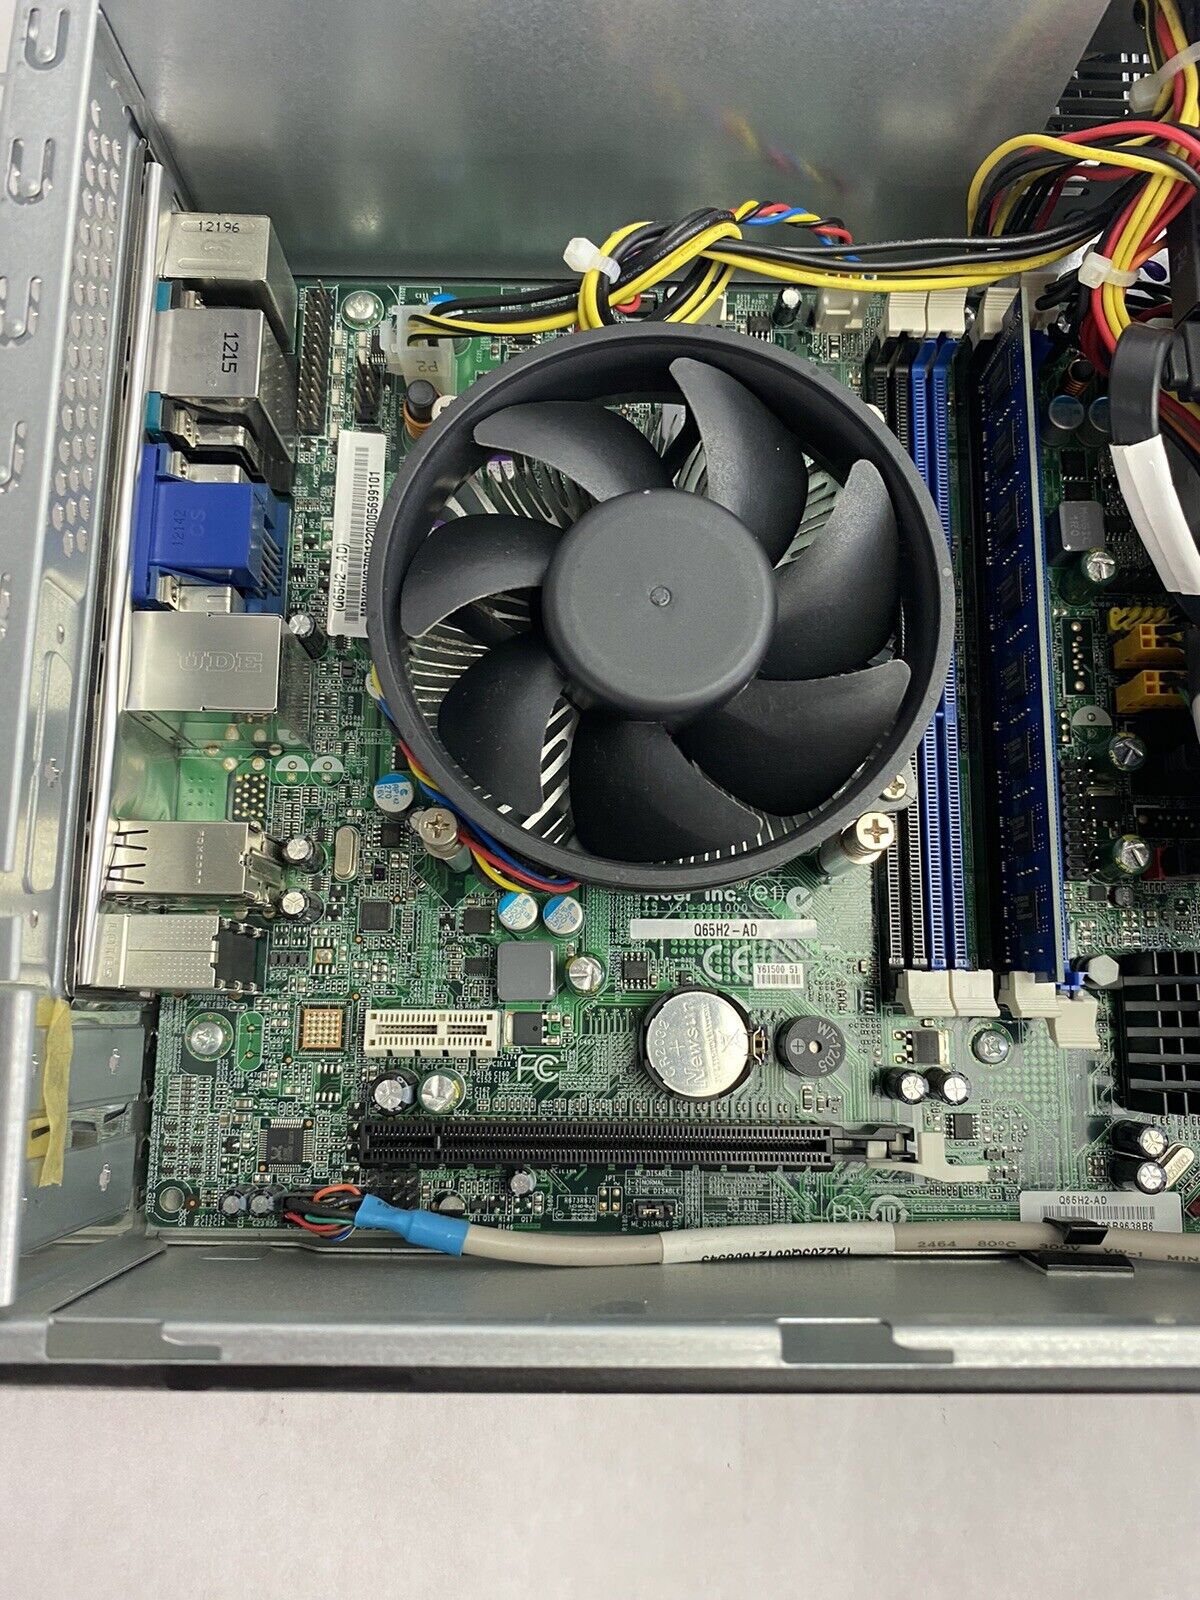 Acer Veriton X4610G  Intel Core i3-2120 3.3GHz CPU  4GB RAM NO HDD NO OS